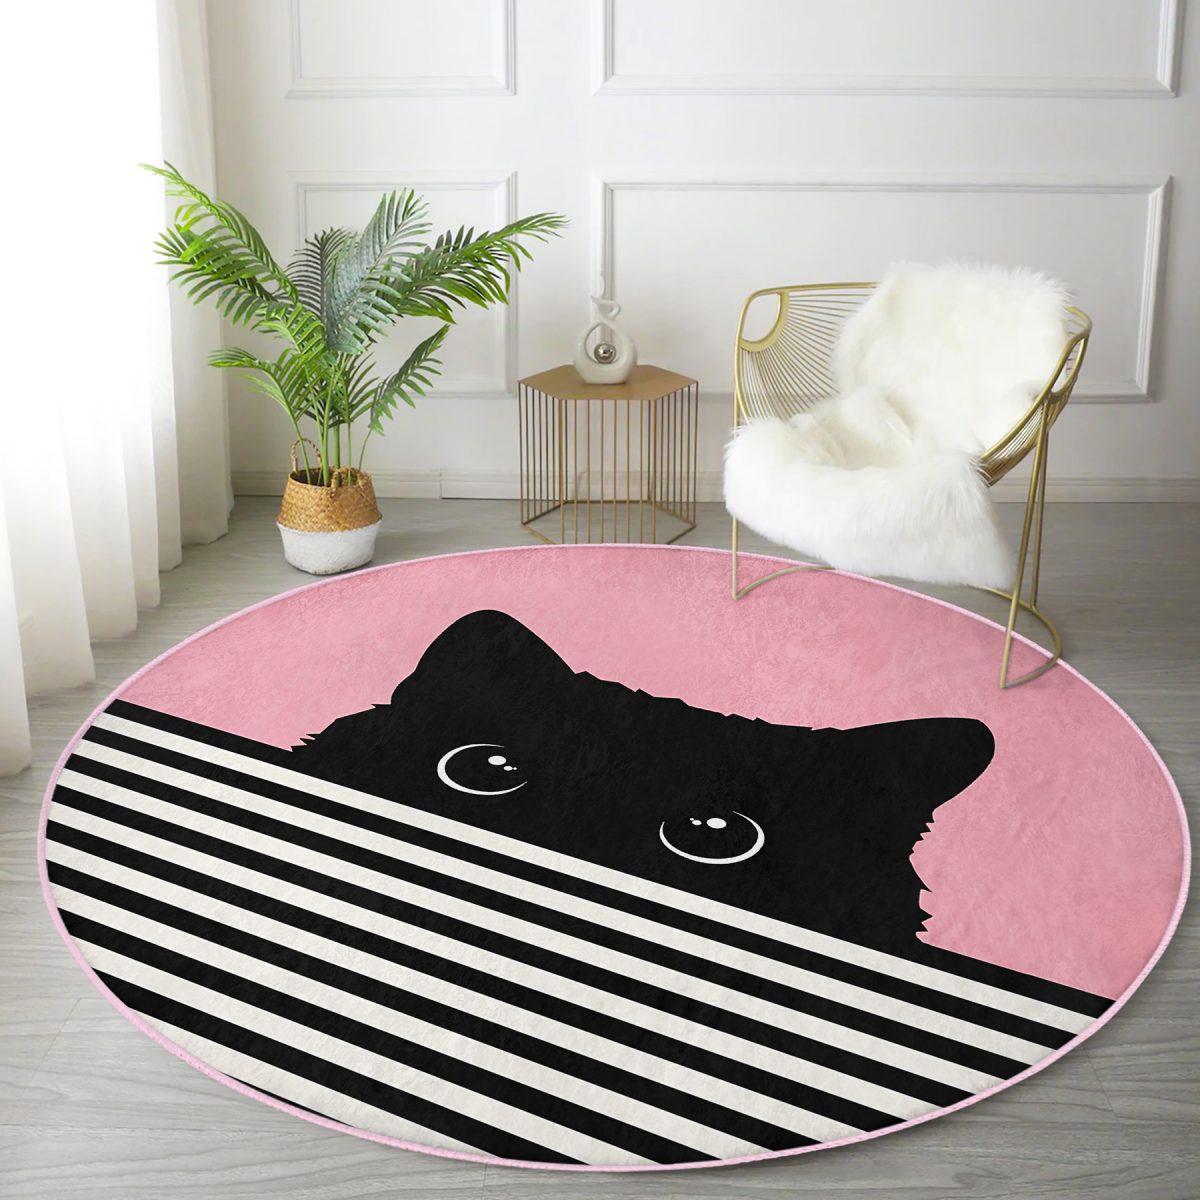 Pembe Zemin Çizgili Motif Kara Kedi Tasarımlı Modern Mutfak Yıkanabilir Kaymaz Tabanlı Yuvarlak Halı Realhomes